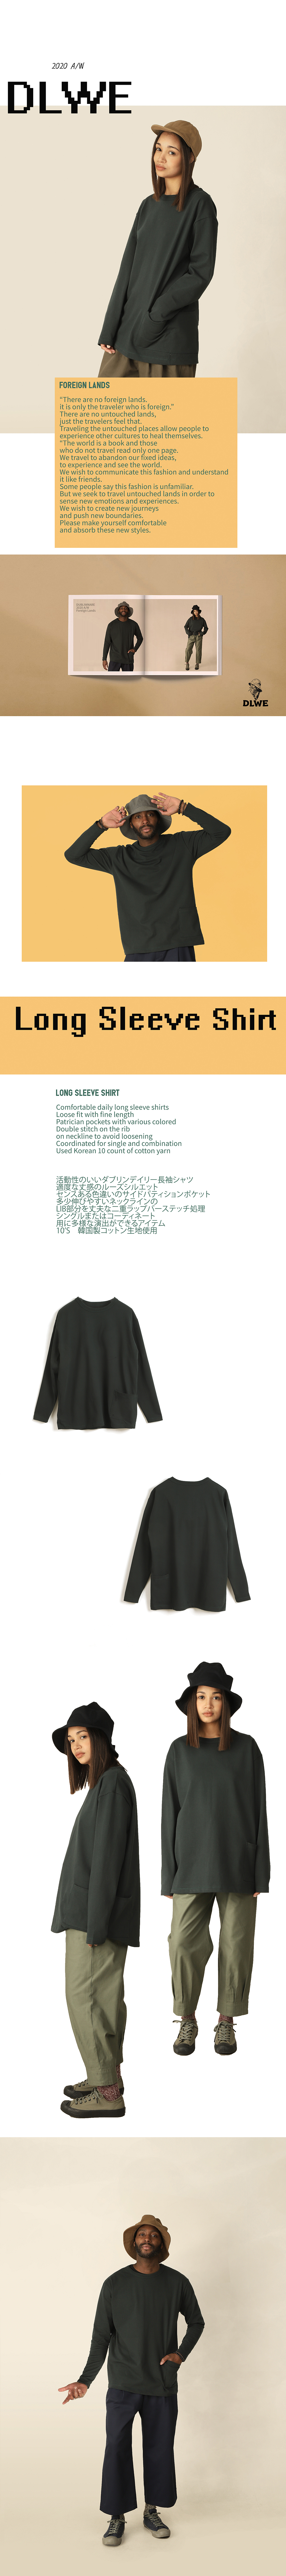 06_Long+Sleeve+Shirt_Deep+Green_01.jpg